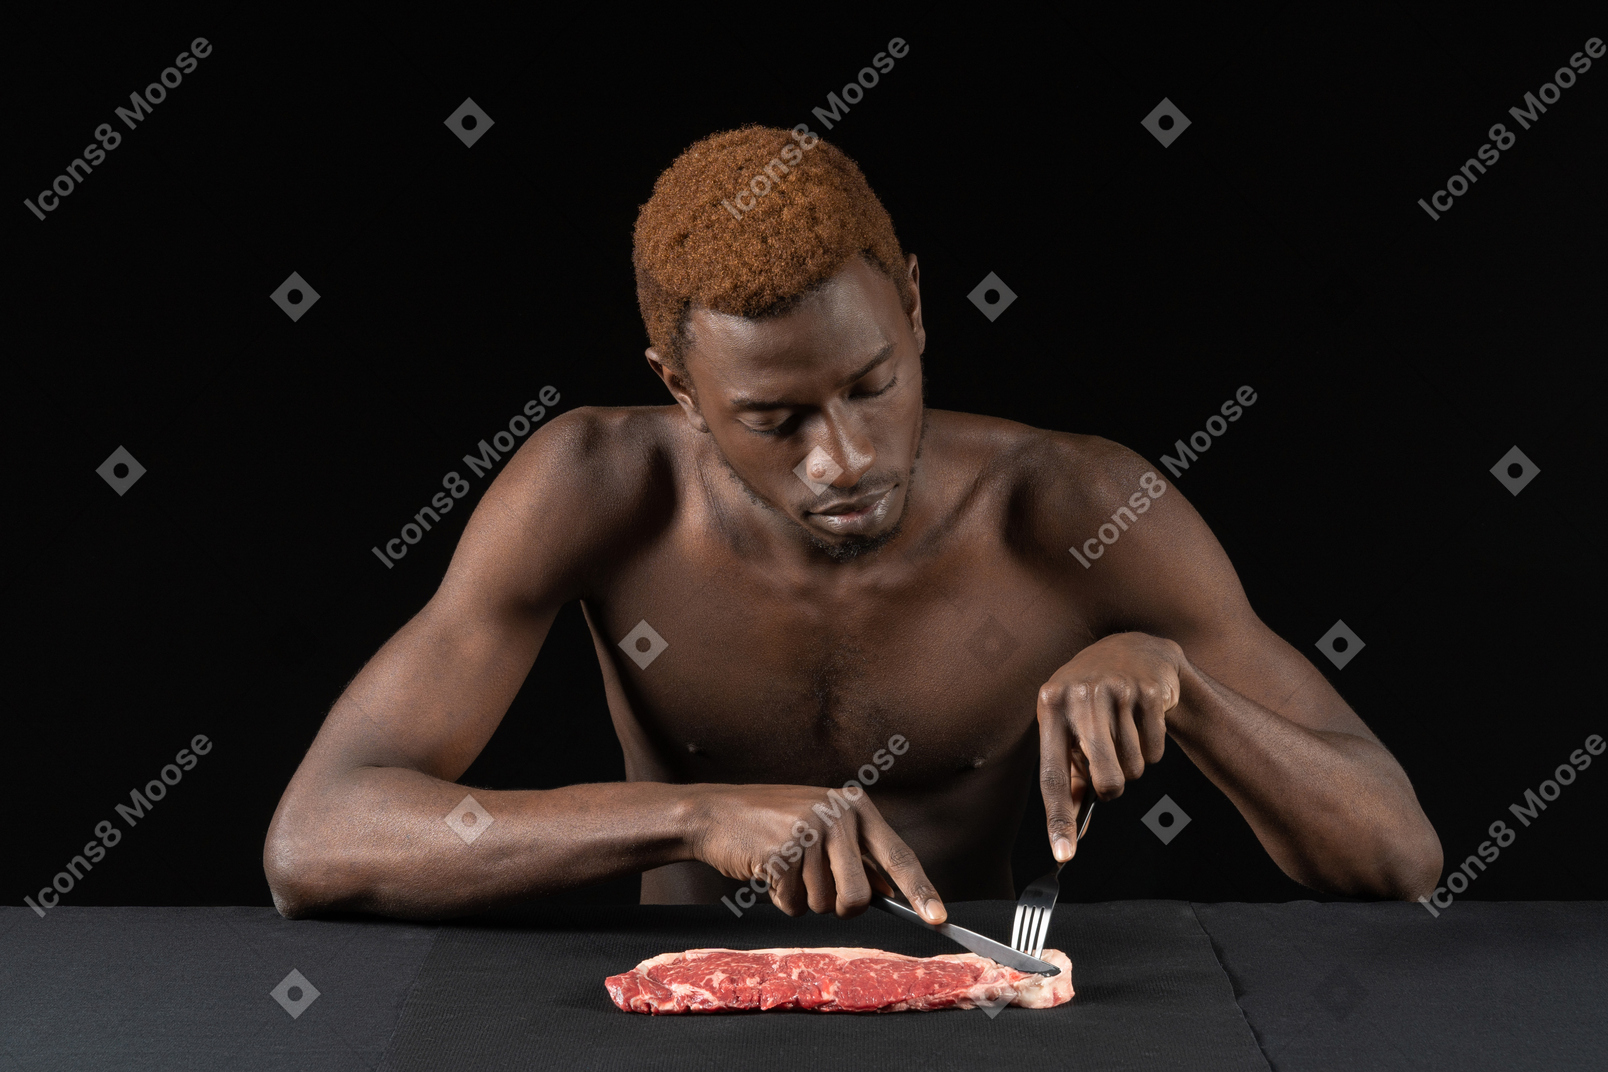 Vue de face d'un jeune homme afro coupant la viande